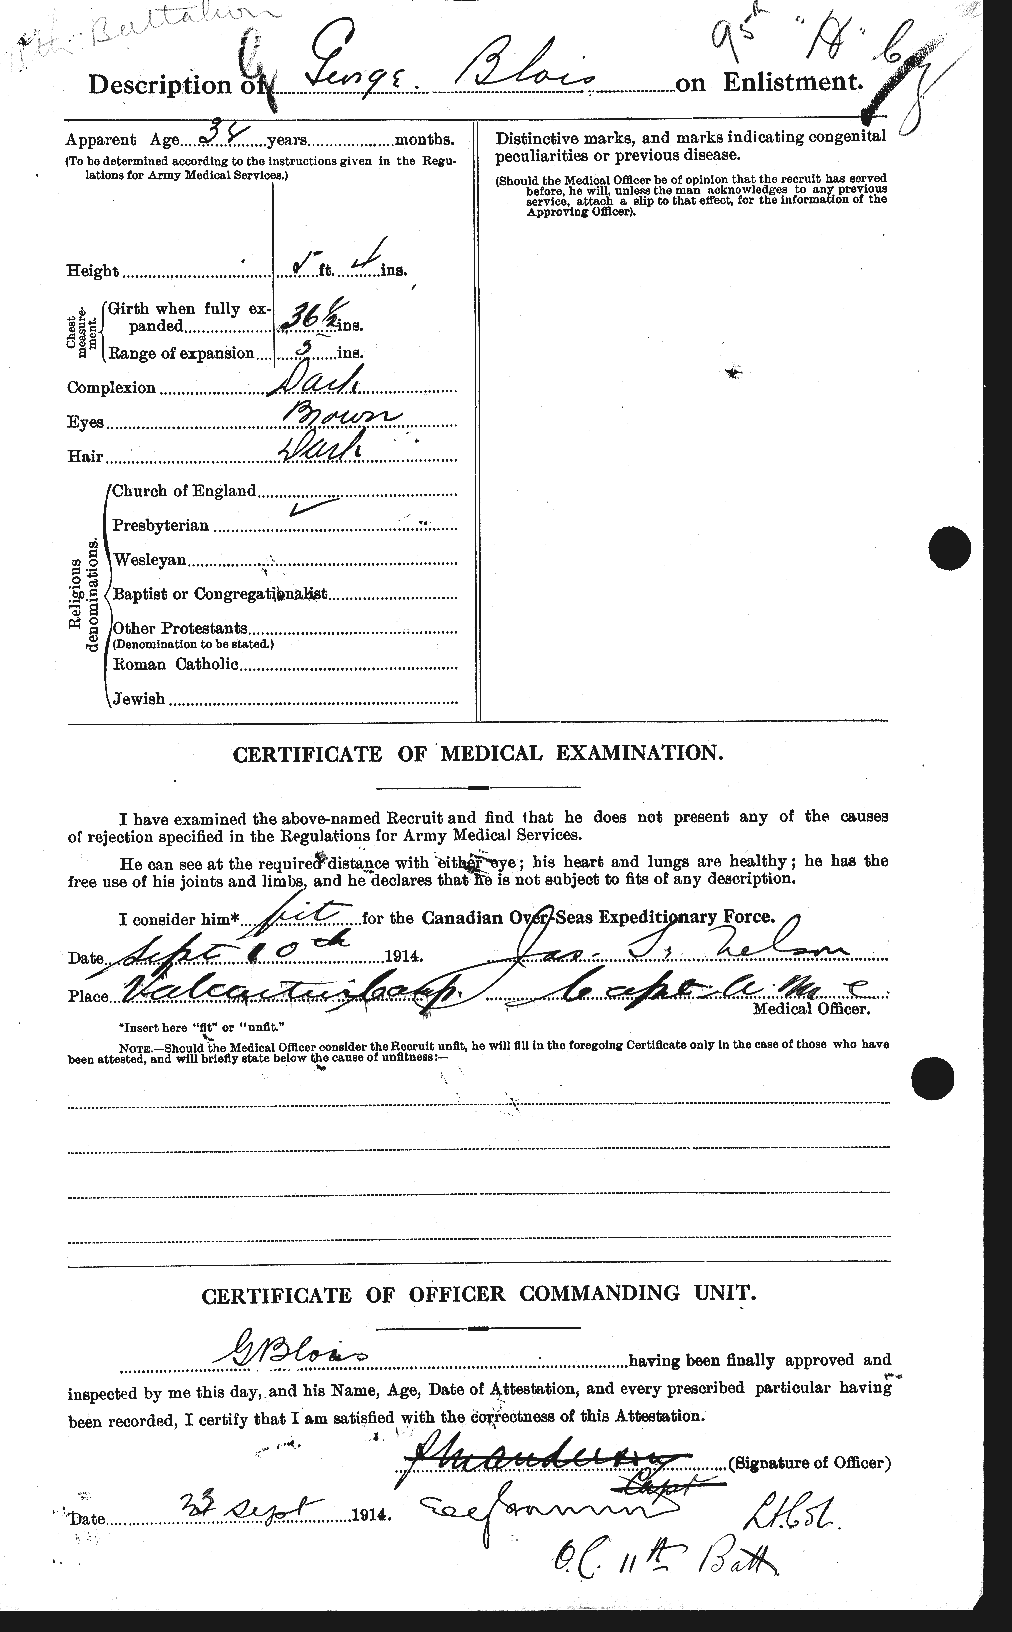 Dossiers du Personnel de la Première Guerre mondiale - CEC 248449b